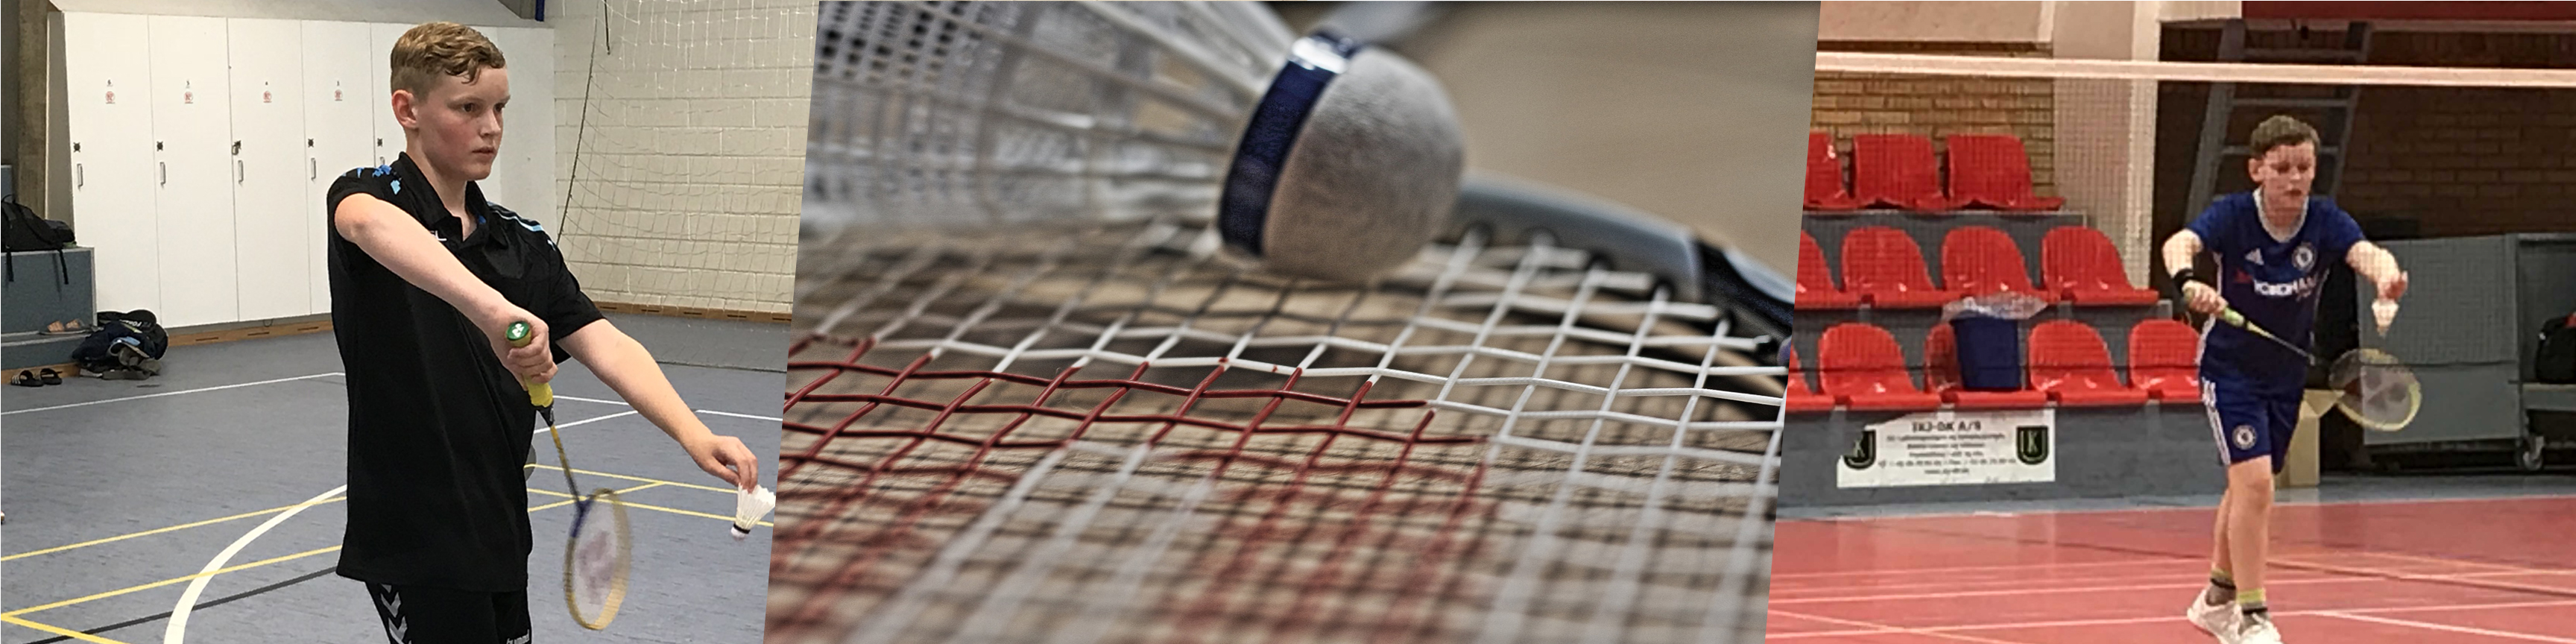 Badminton_topfoto_ny